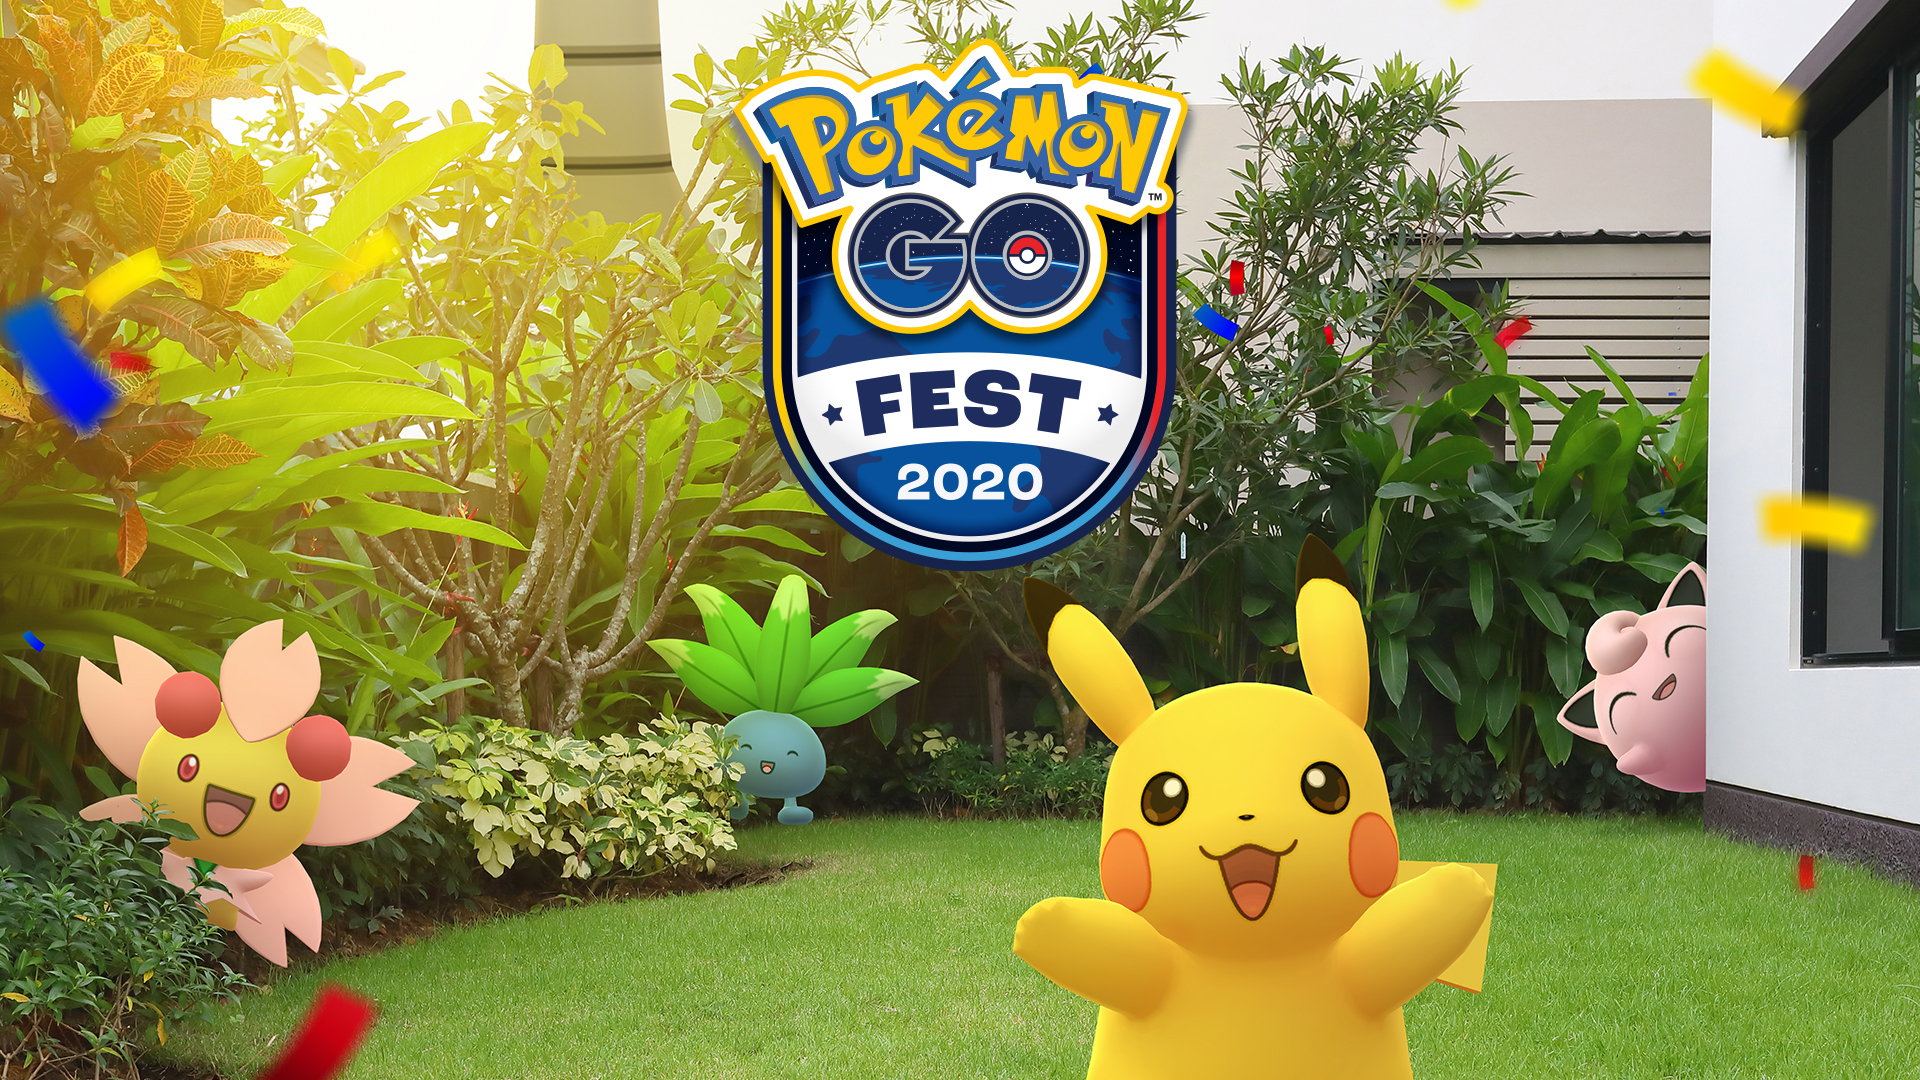 Pokémon GO détaille le programme du GO Fest édition 2020